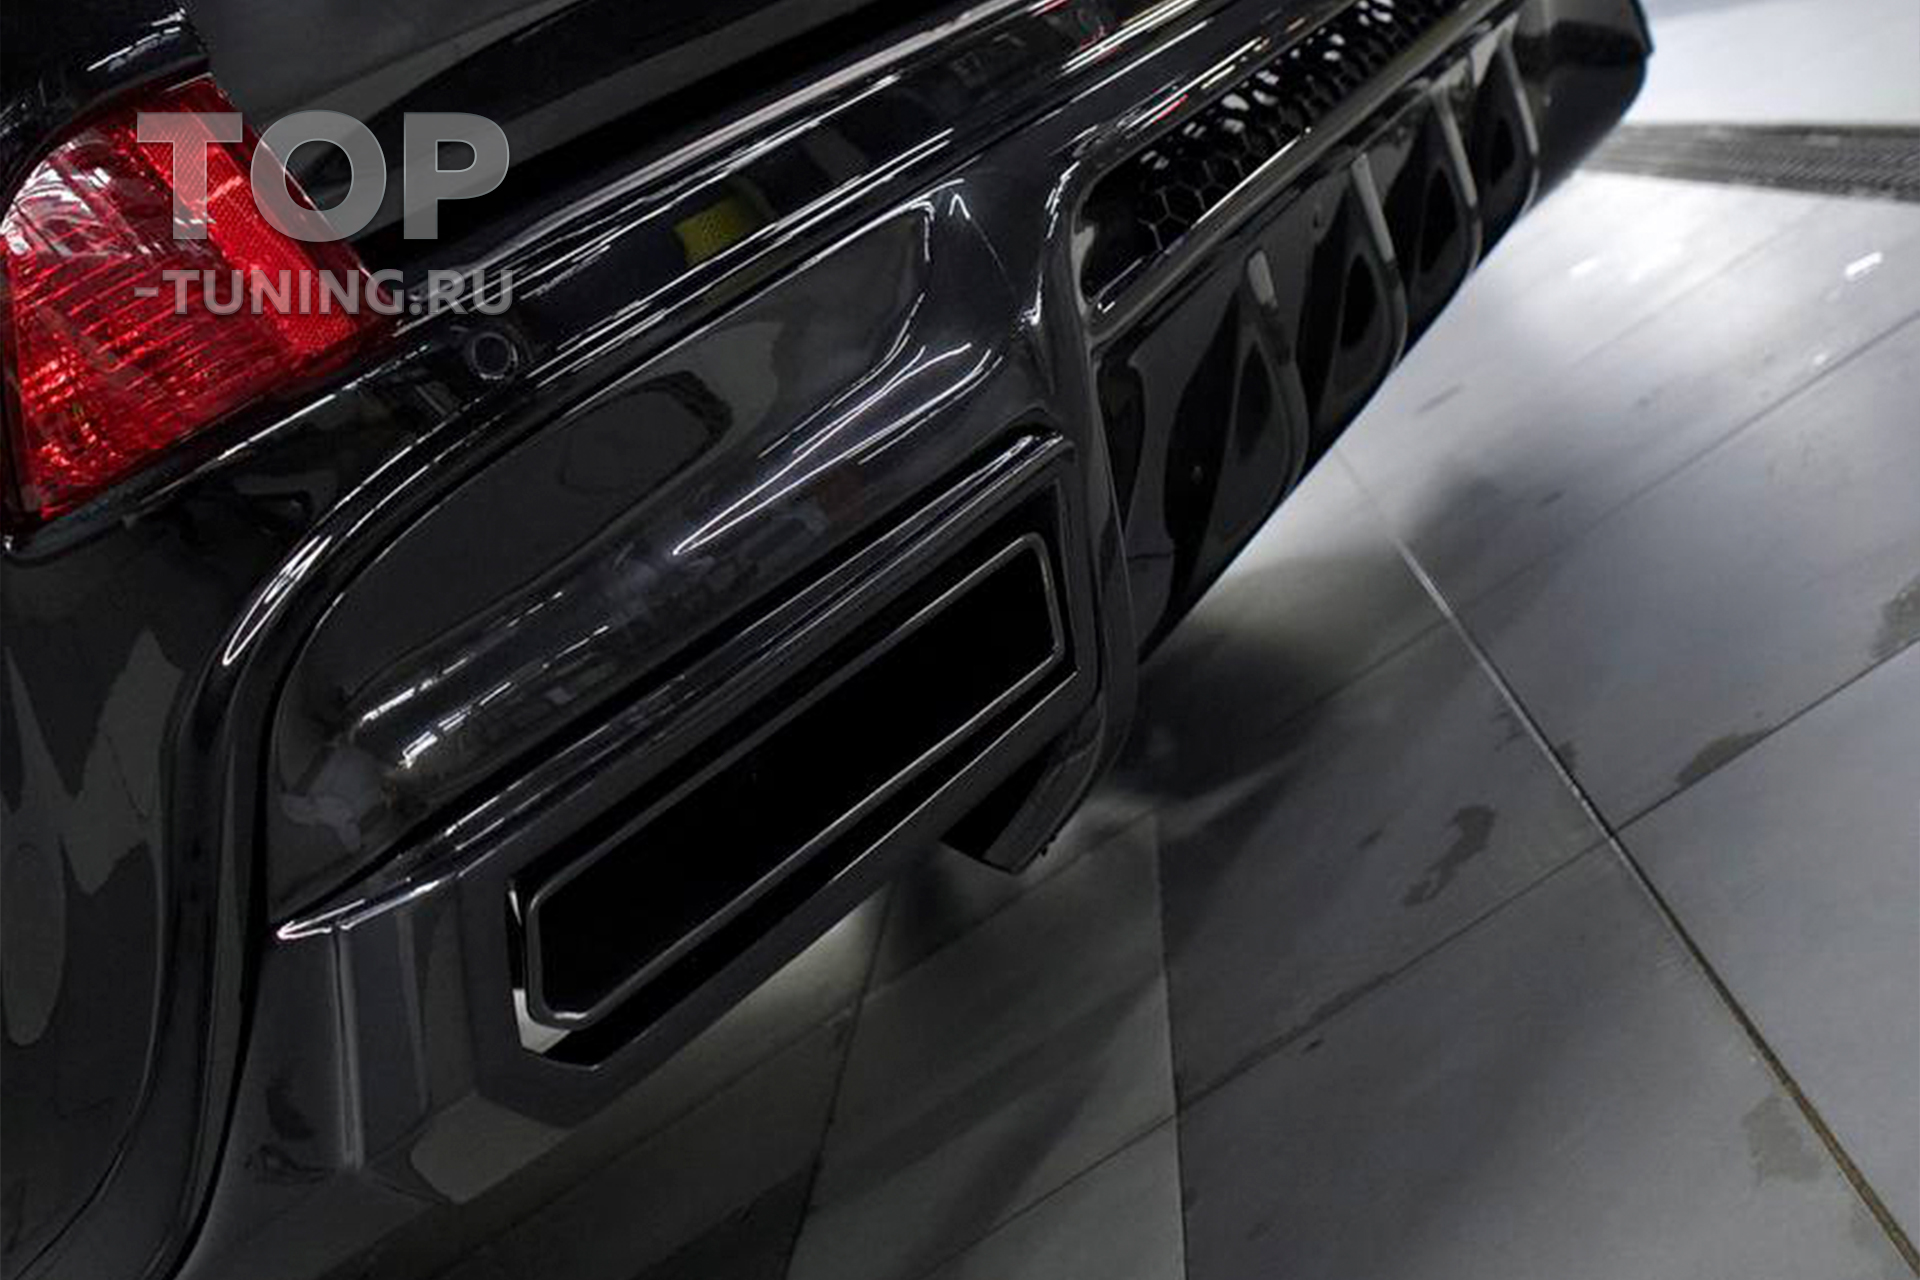 Комплект дооснащения Renegade для модернизации экстерьера Lexus LX570 с 2015+ года выпуска